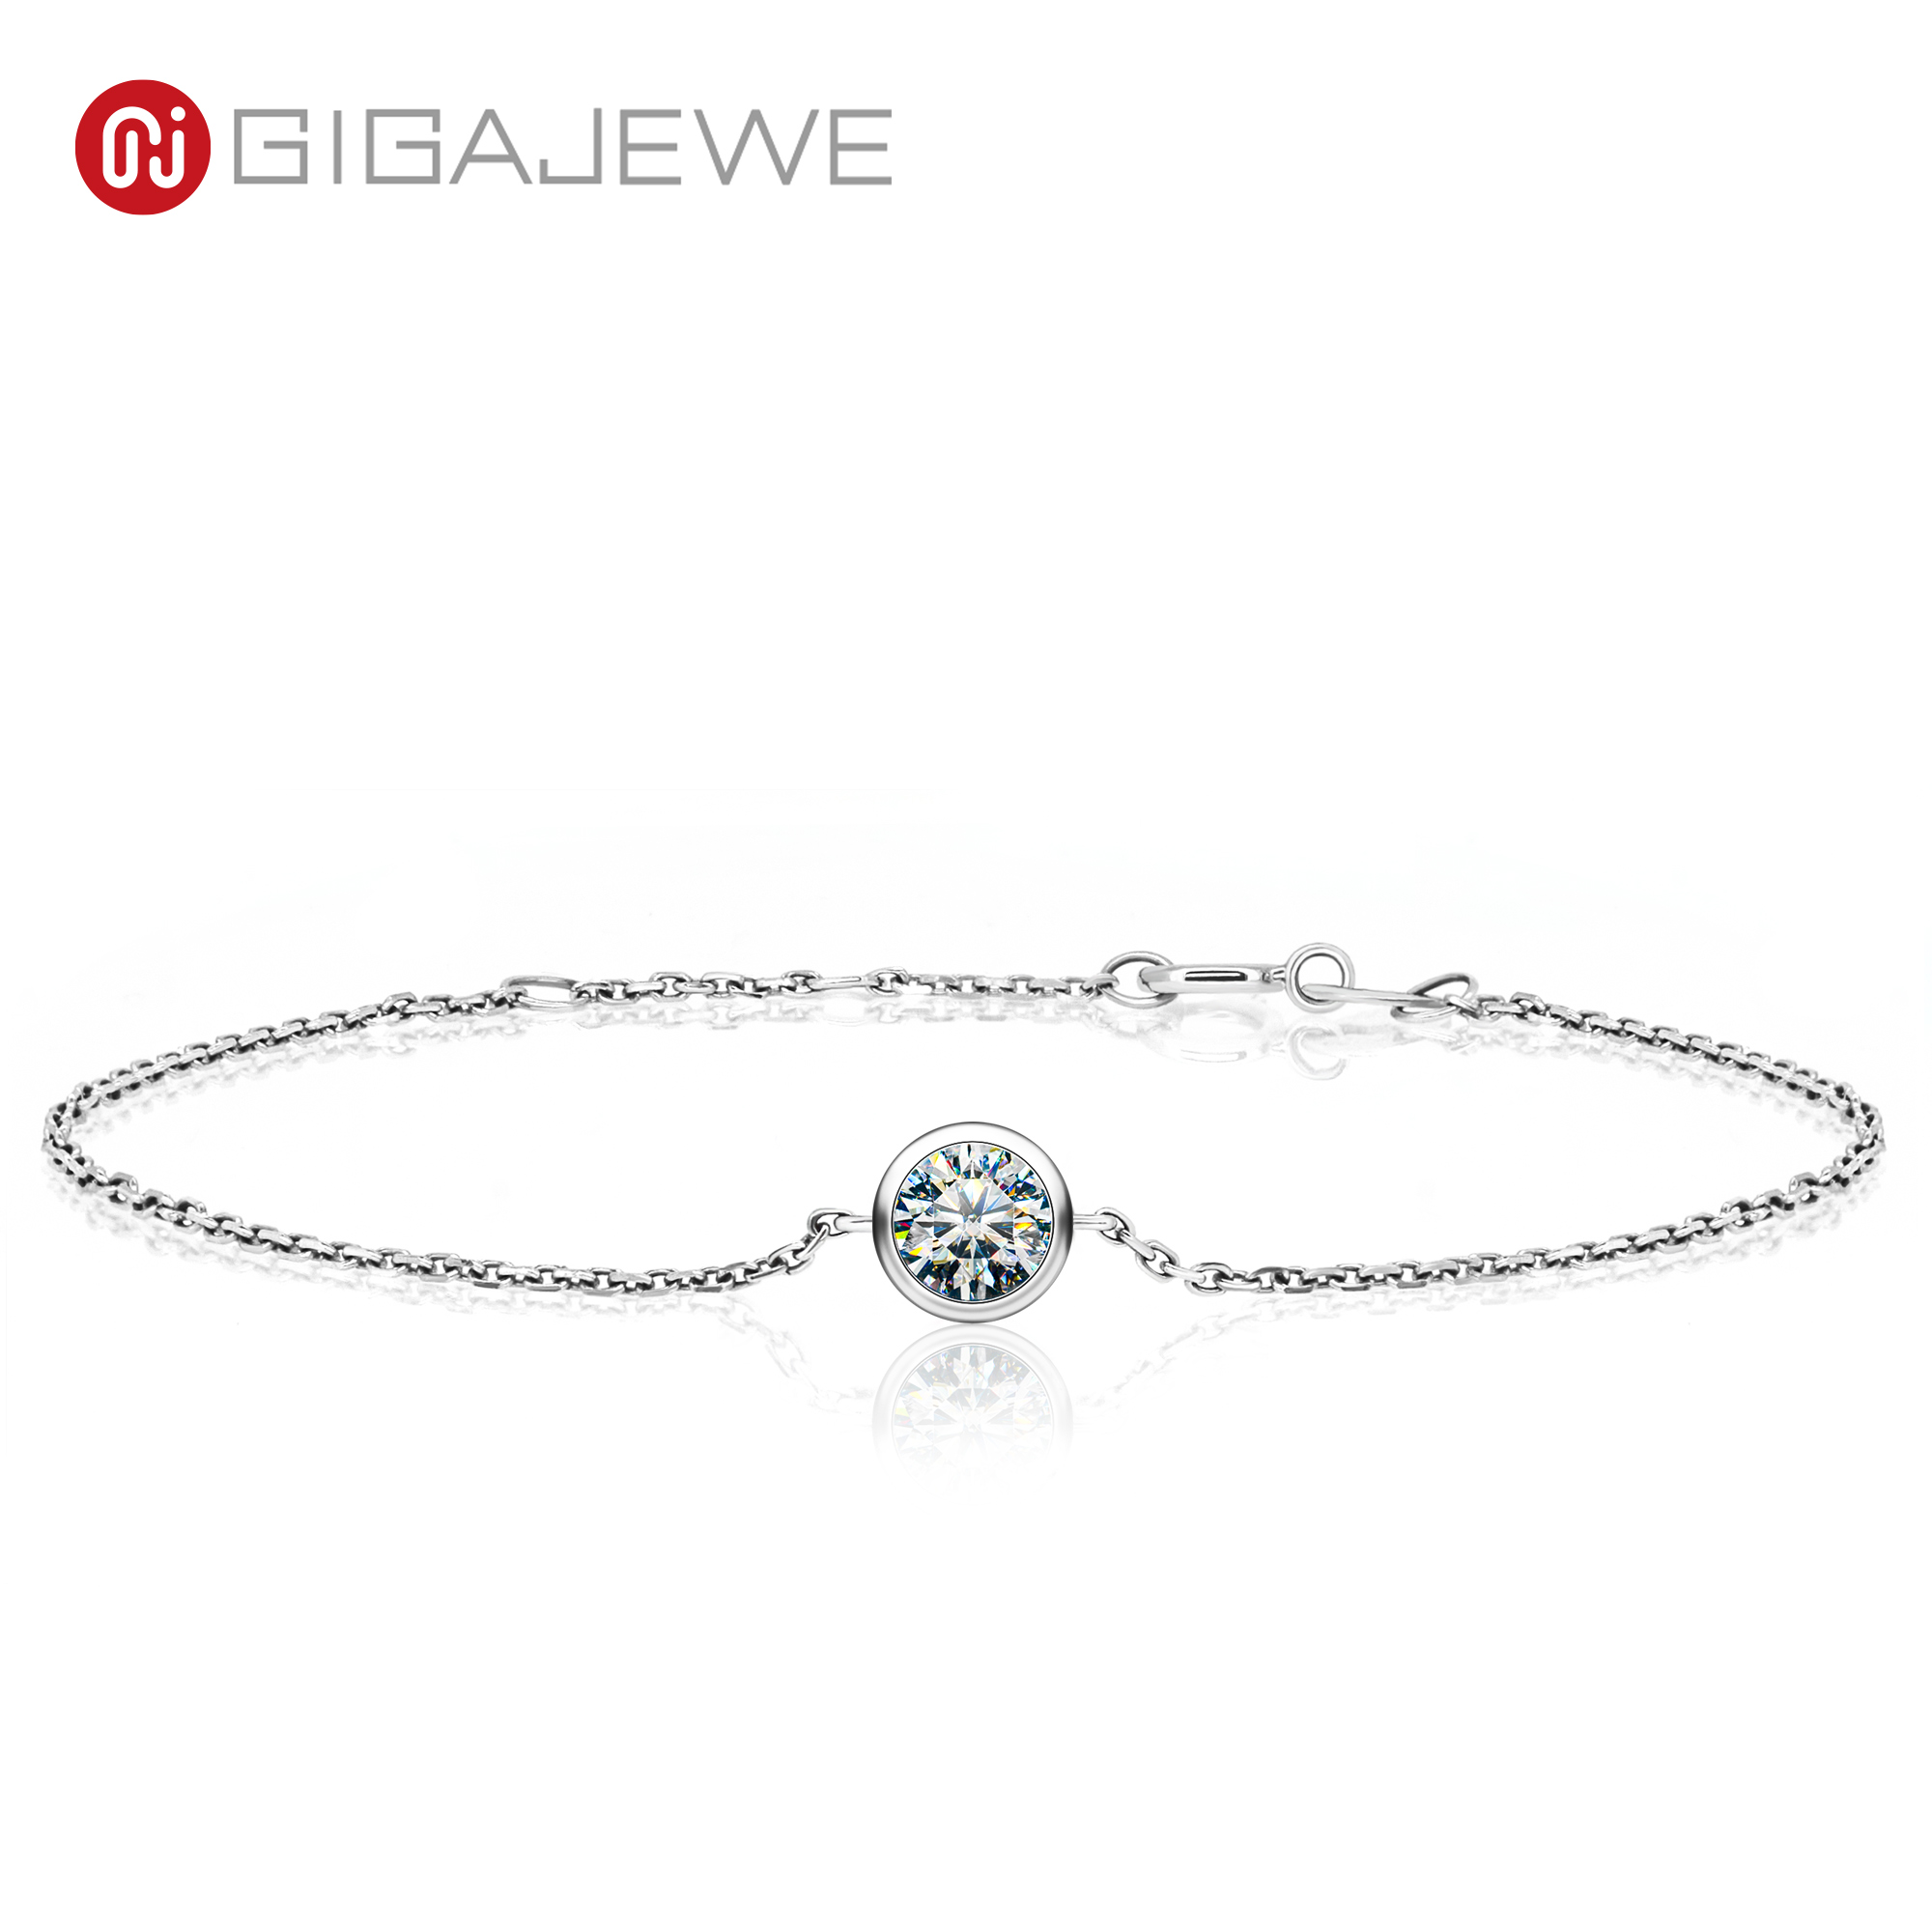 GIGAJEWE 莫桑钻总0.5克拉18K金钻石测试通过珠宝女士女孩礼物